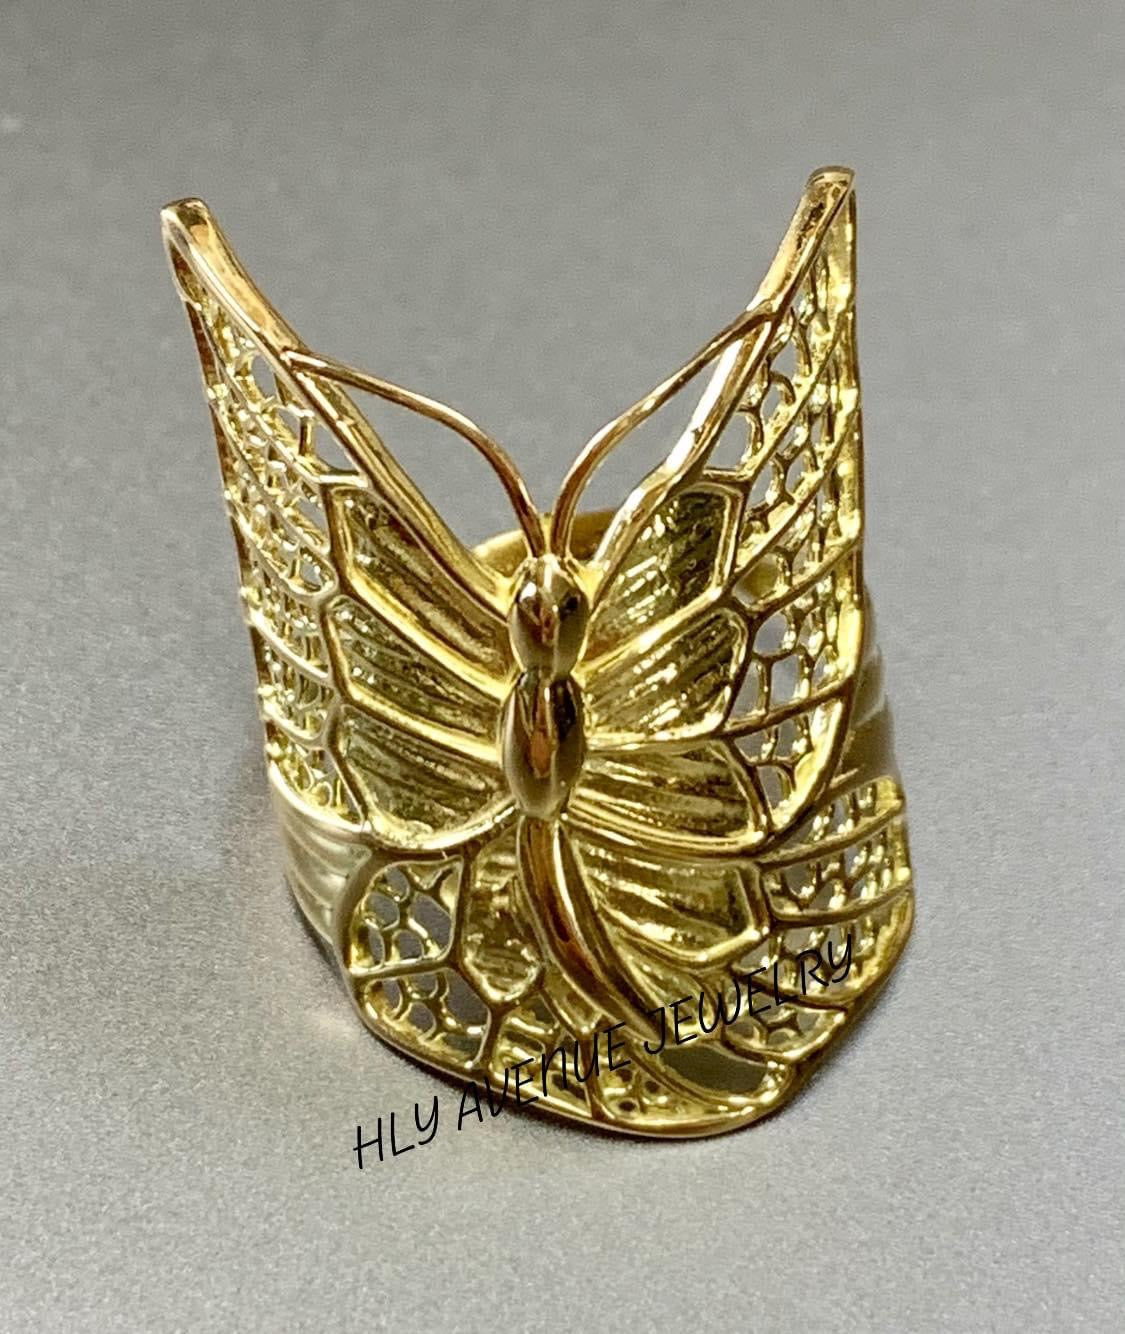 18 kt gold enamelled butterfly ring - Artlinea S.r.l.